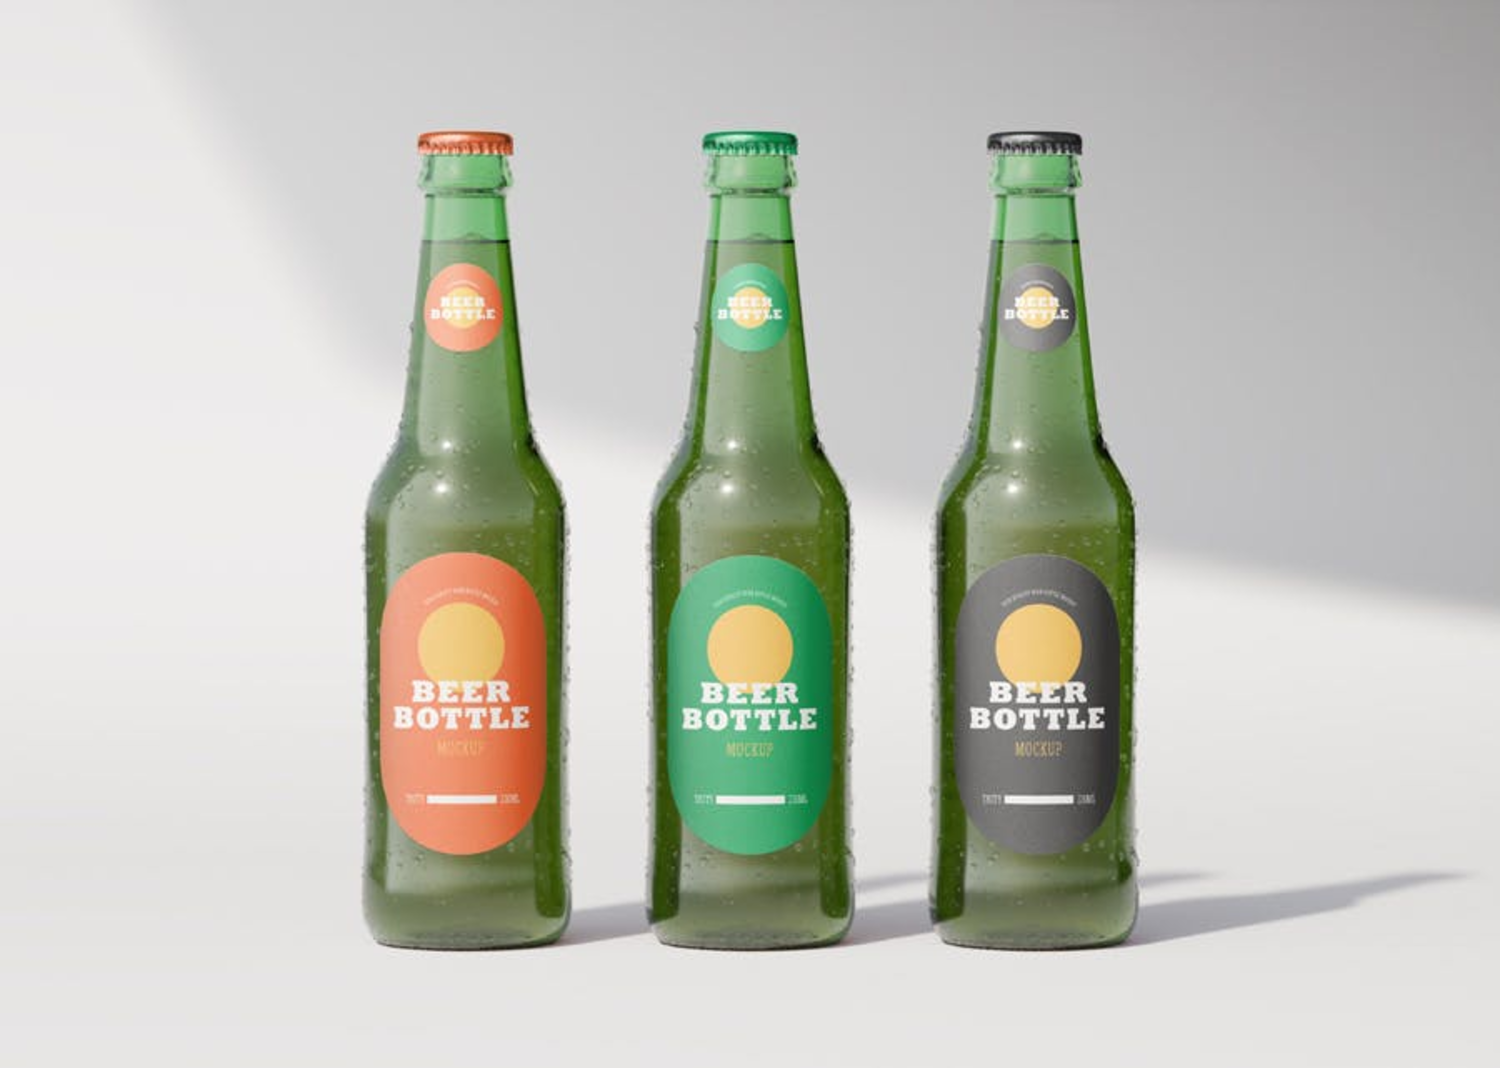 79 啤酒可乐玻璃瓶品牌包装设计样机模板 Beer Bottle Mockup 3